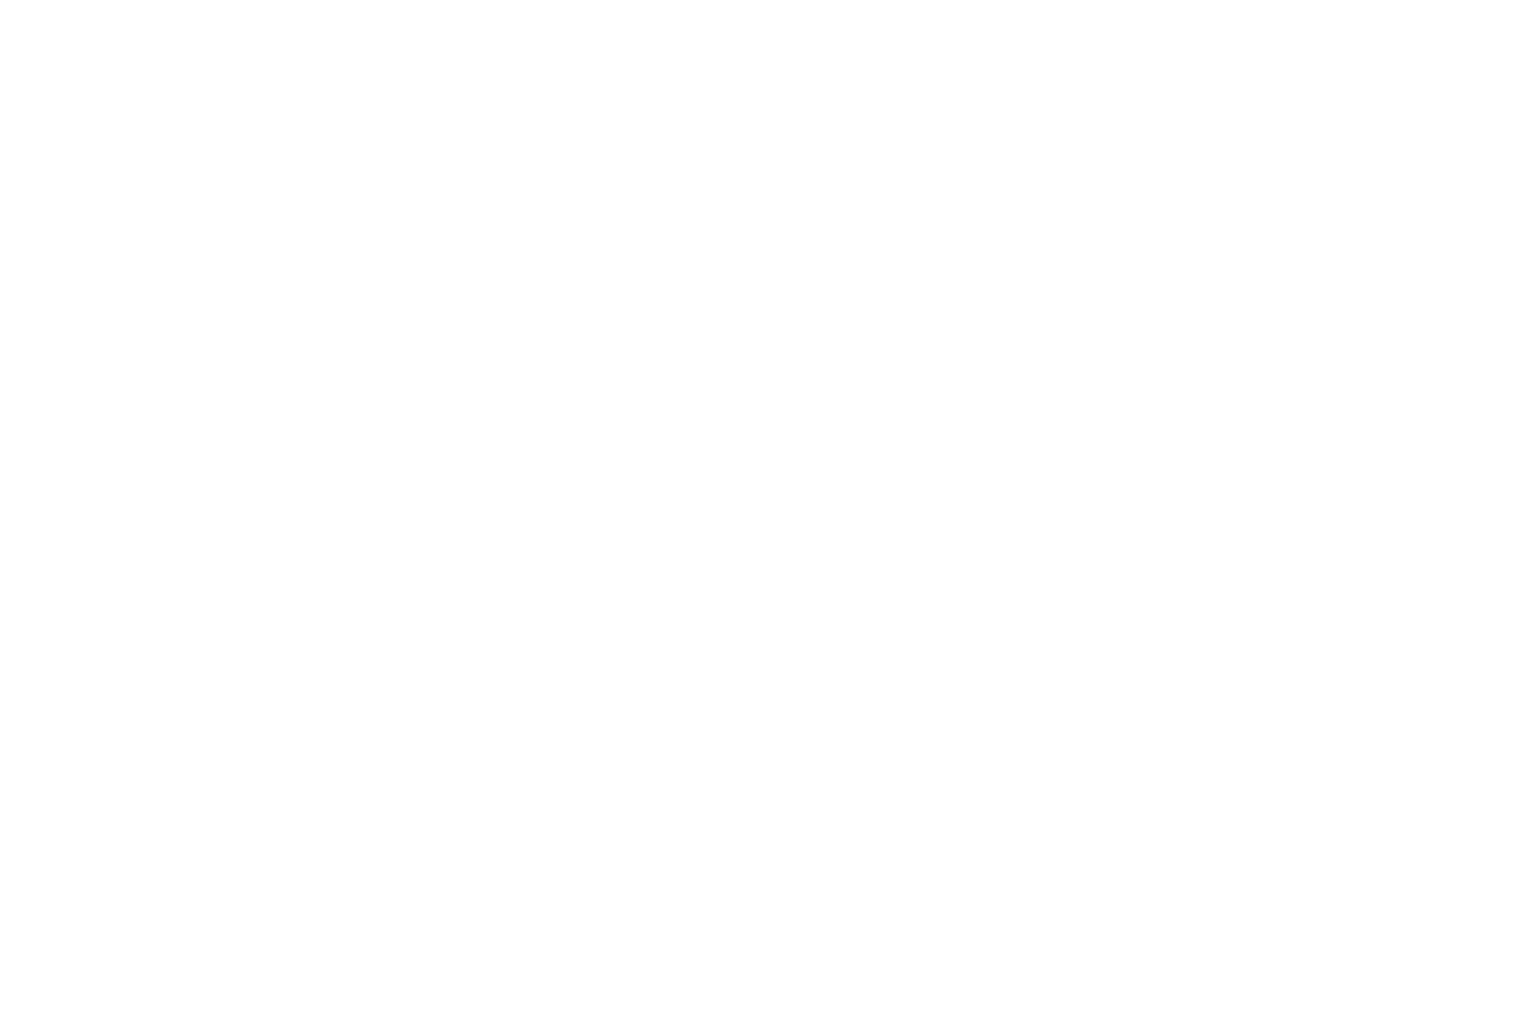 Vátryggingafélag Íslands logo for dark backgrounds (transparent PNG)